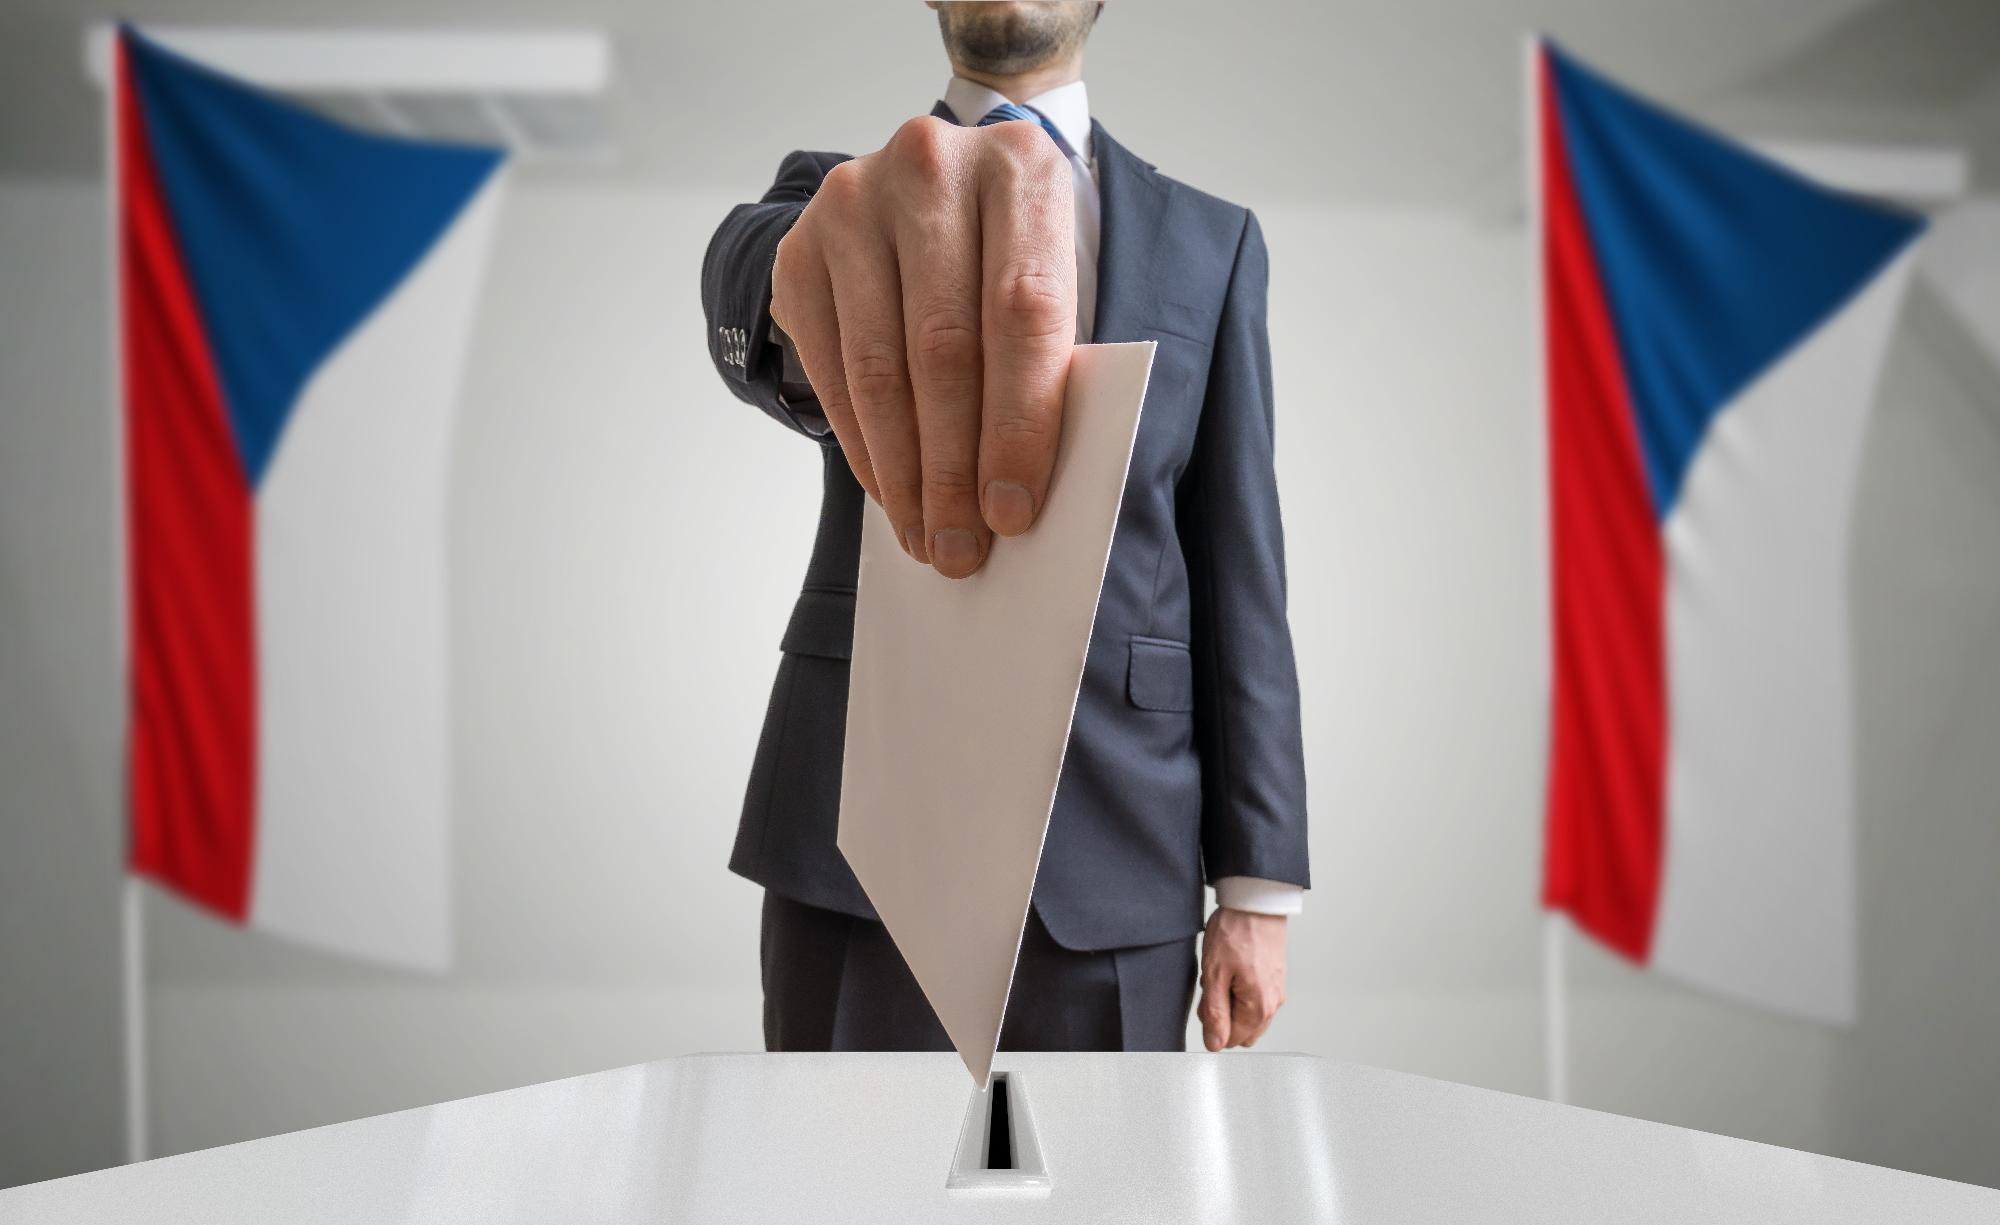 Megkezdődött az államfőválasztás Csehországban